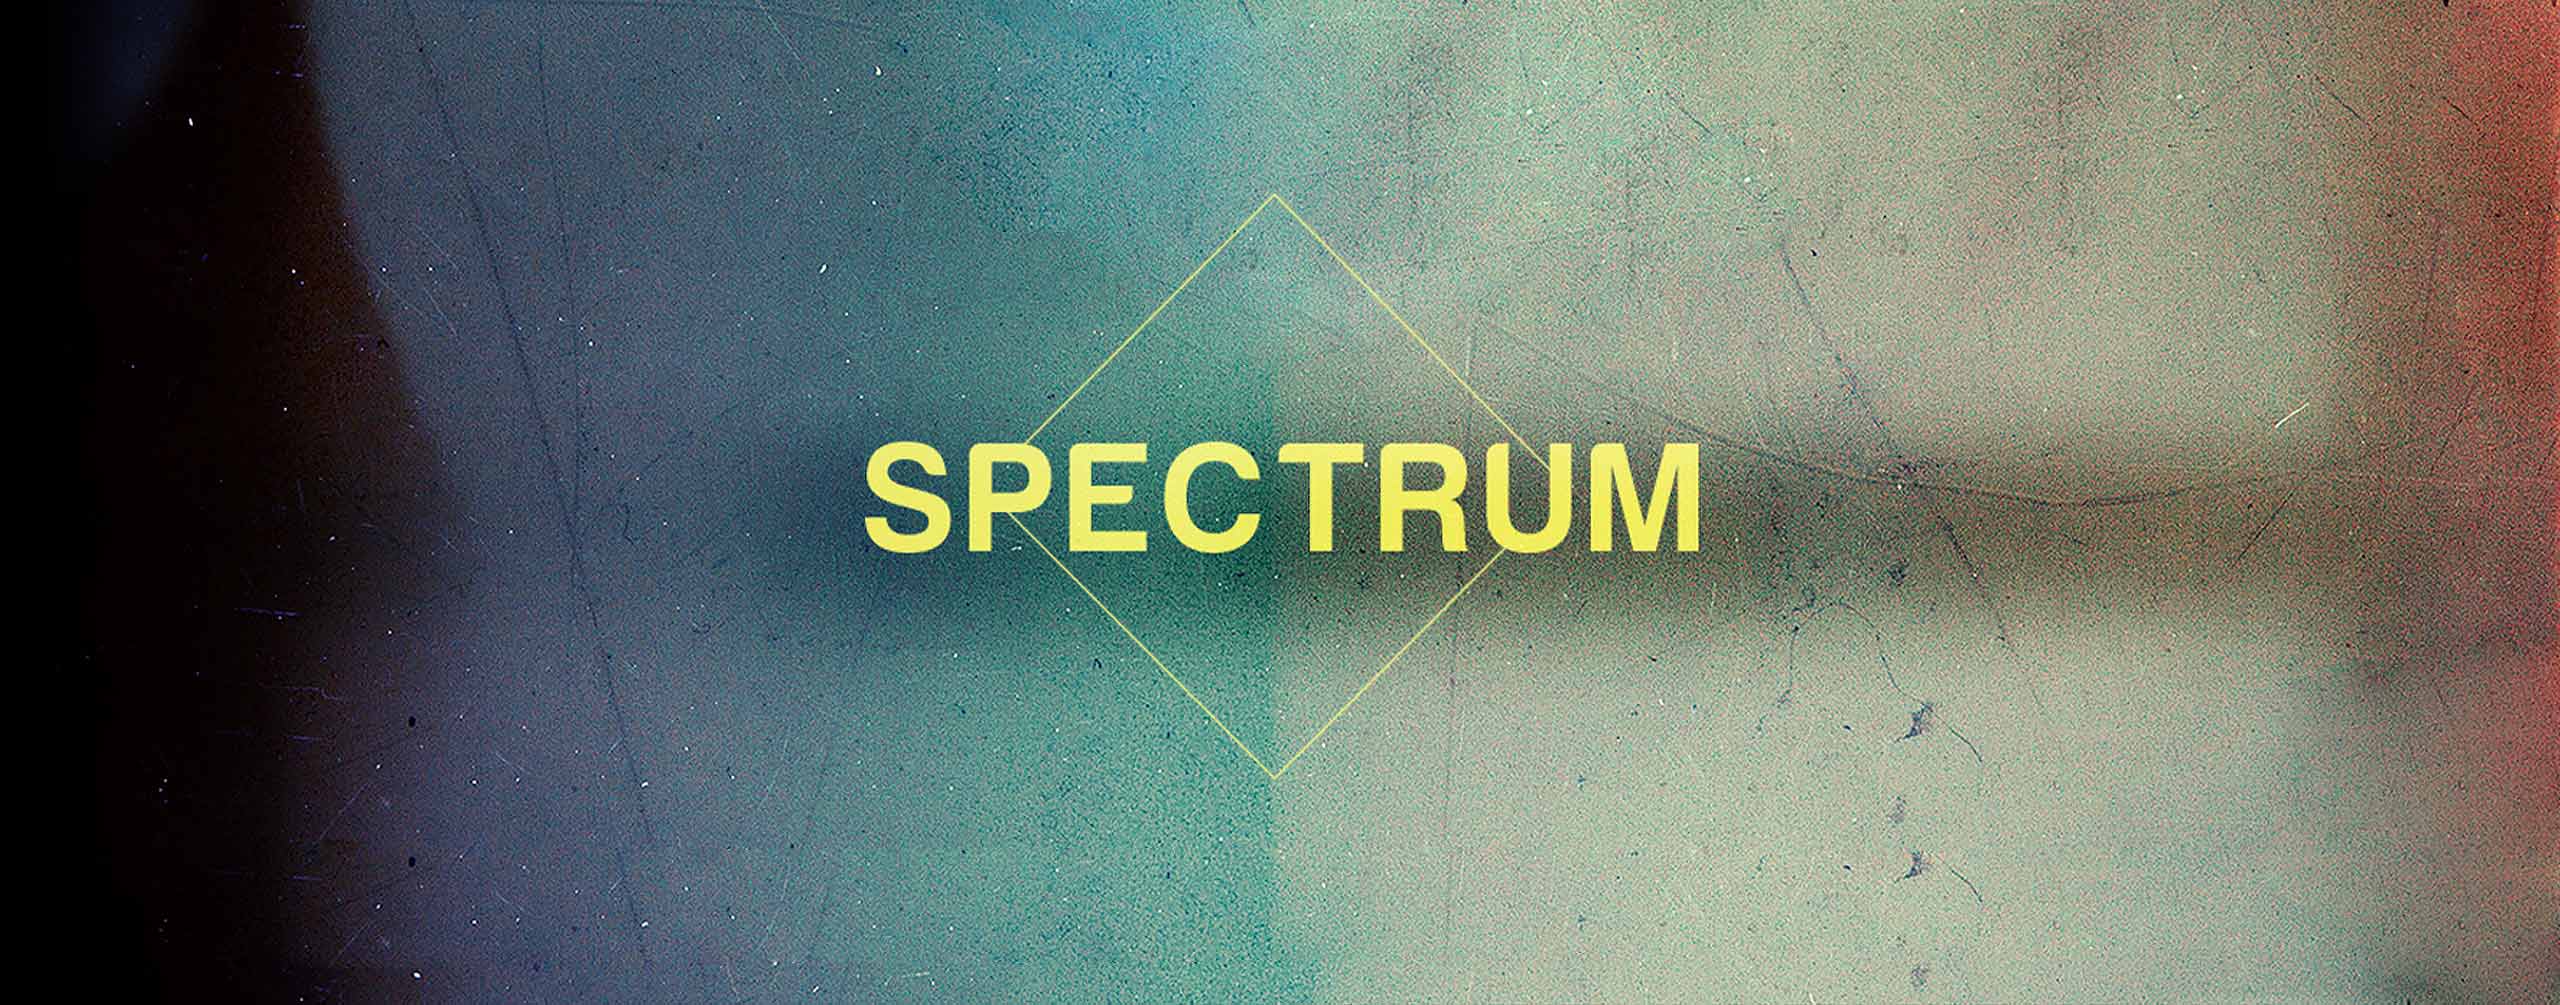 Spectrum 8mm - Vintage Light Leaks